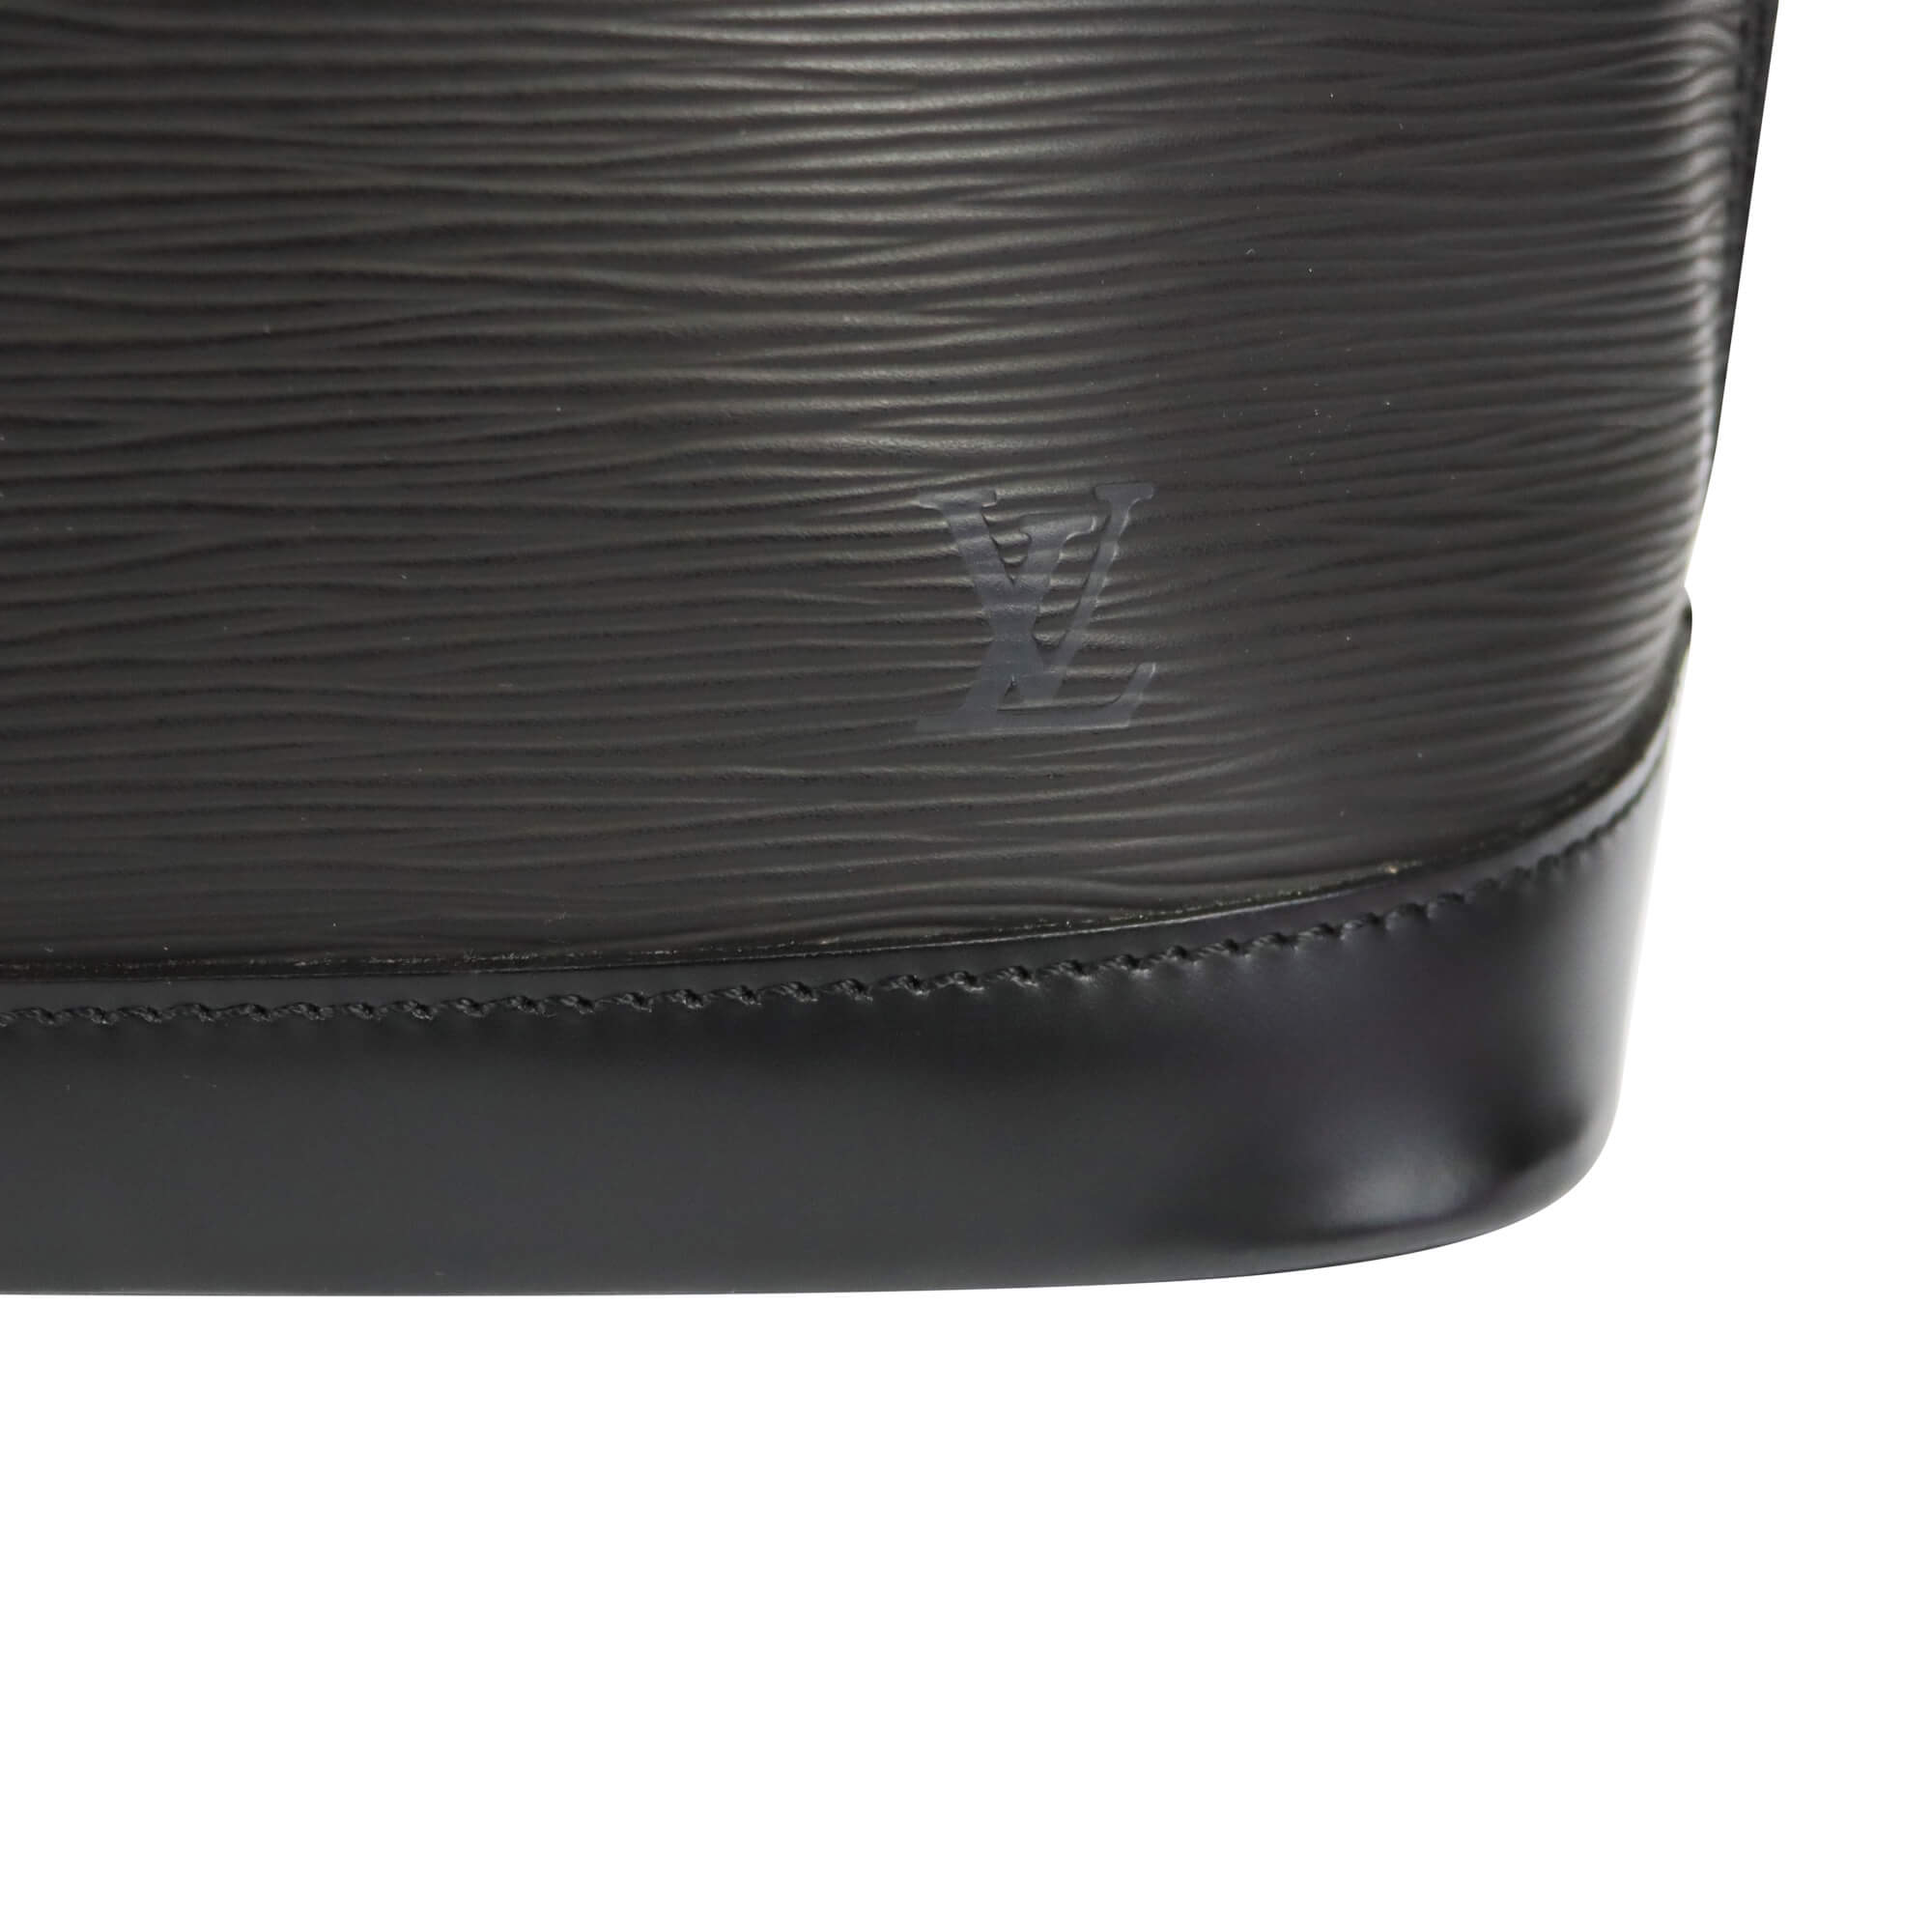 Louis Vuitton - Black Epi Leather Alma PM